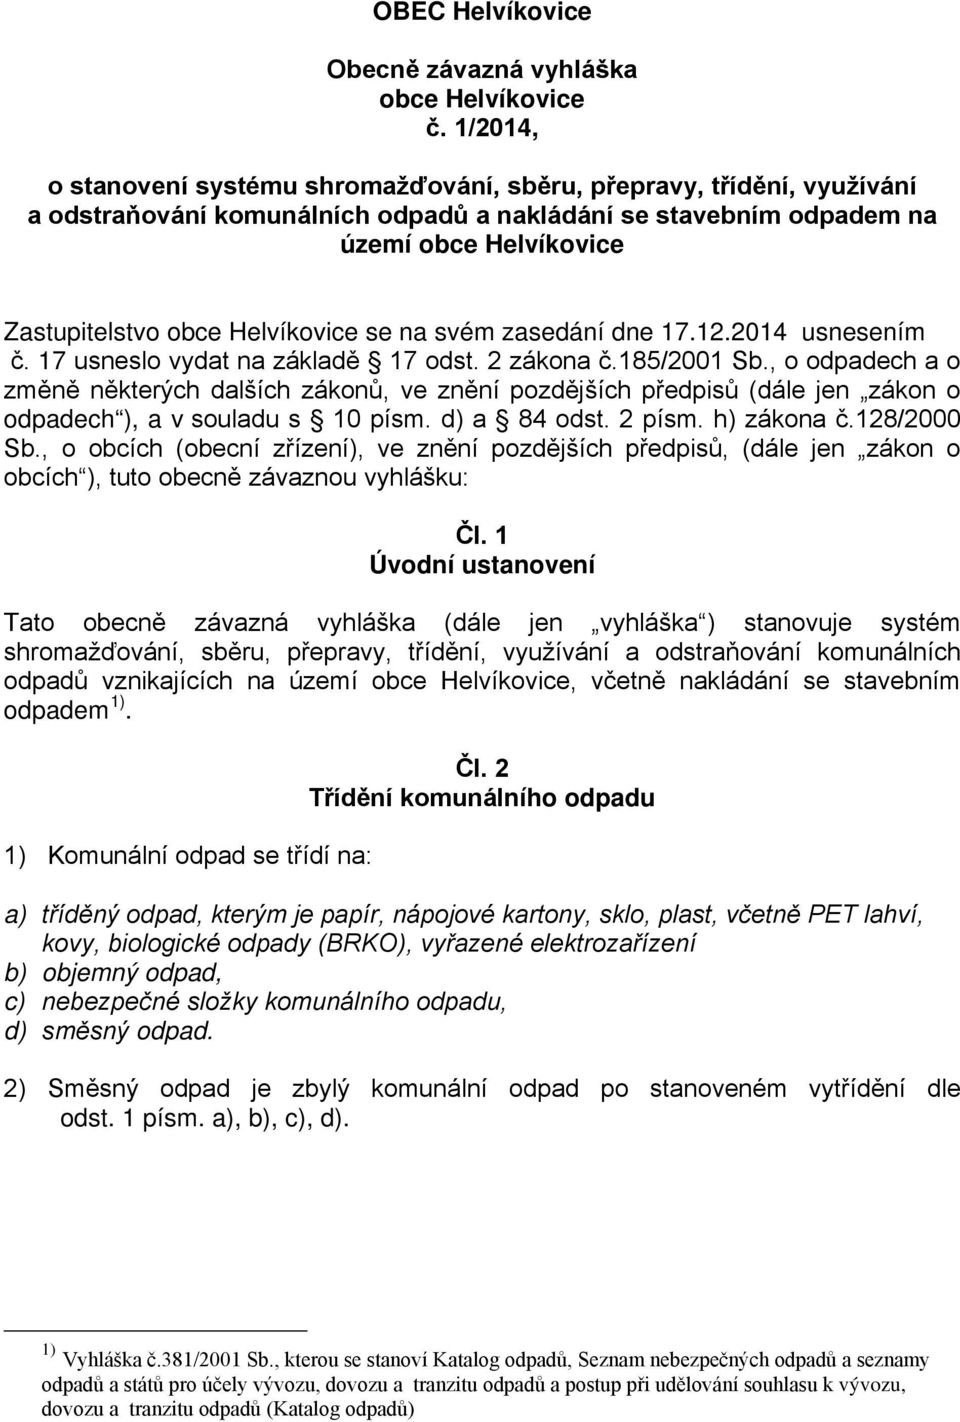 Helvíkovice se na svém zasedání dne 17.12.2014 usnesením č. 17 usneslo vydat na základě 17 odst. 2 zákona č.185/2001 Sb.